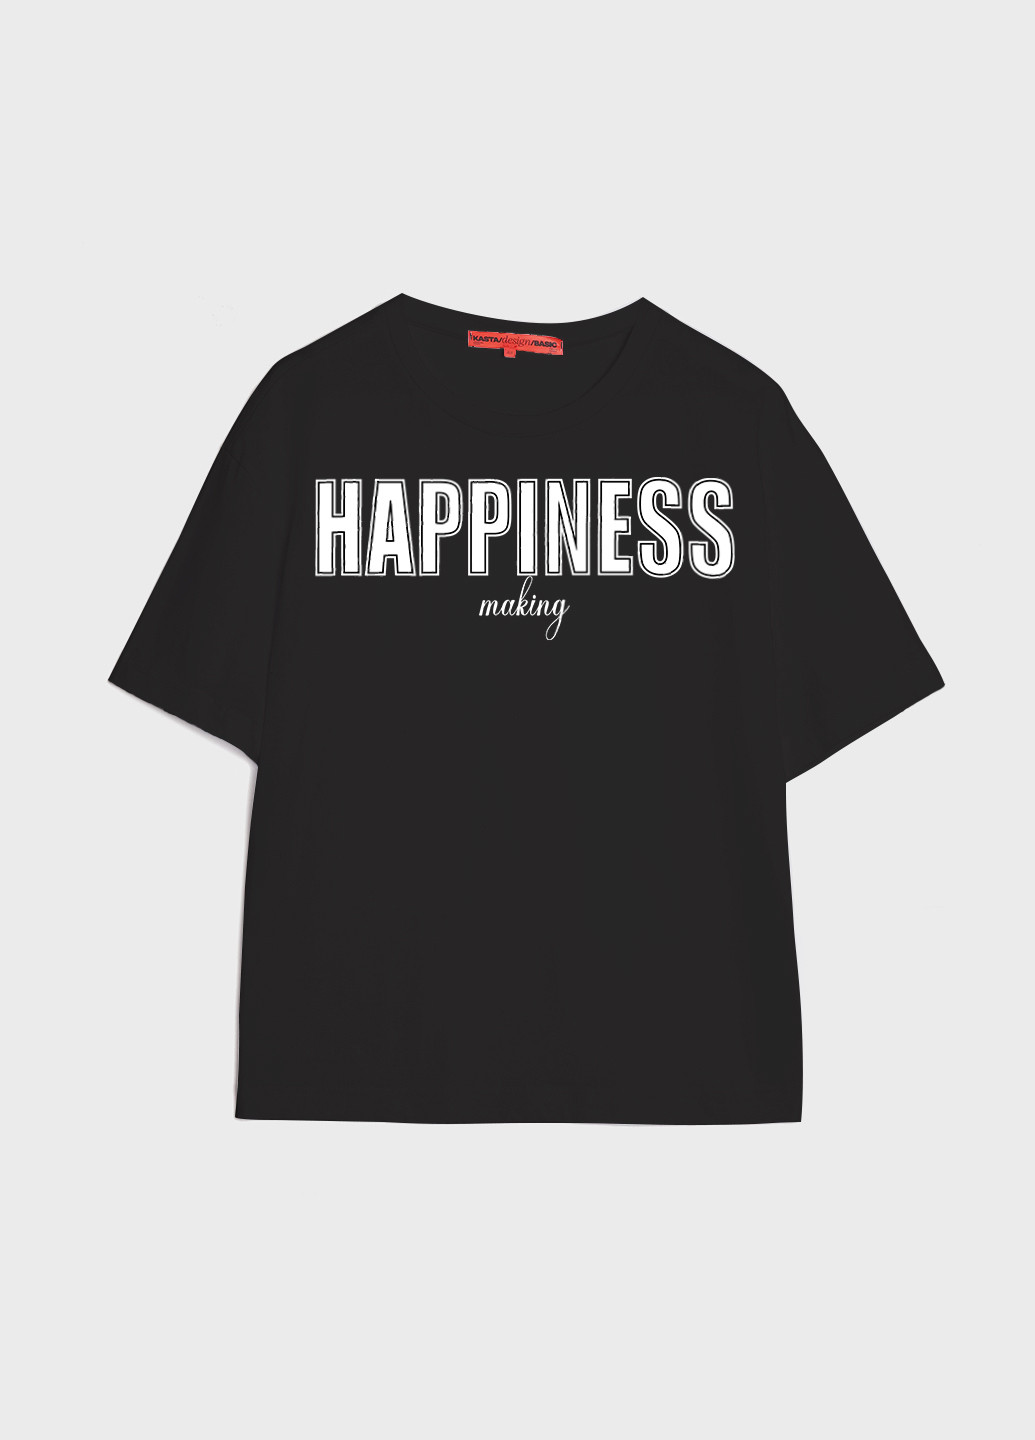 Черная летняя футболка женская оверсайз happiness KASTA design